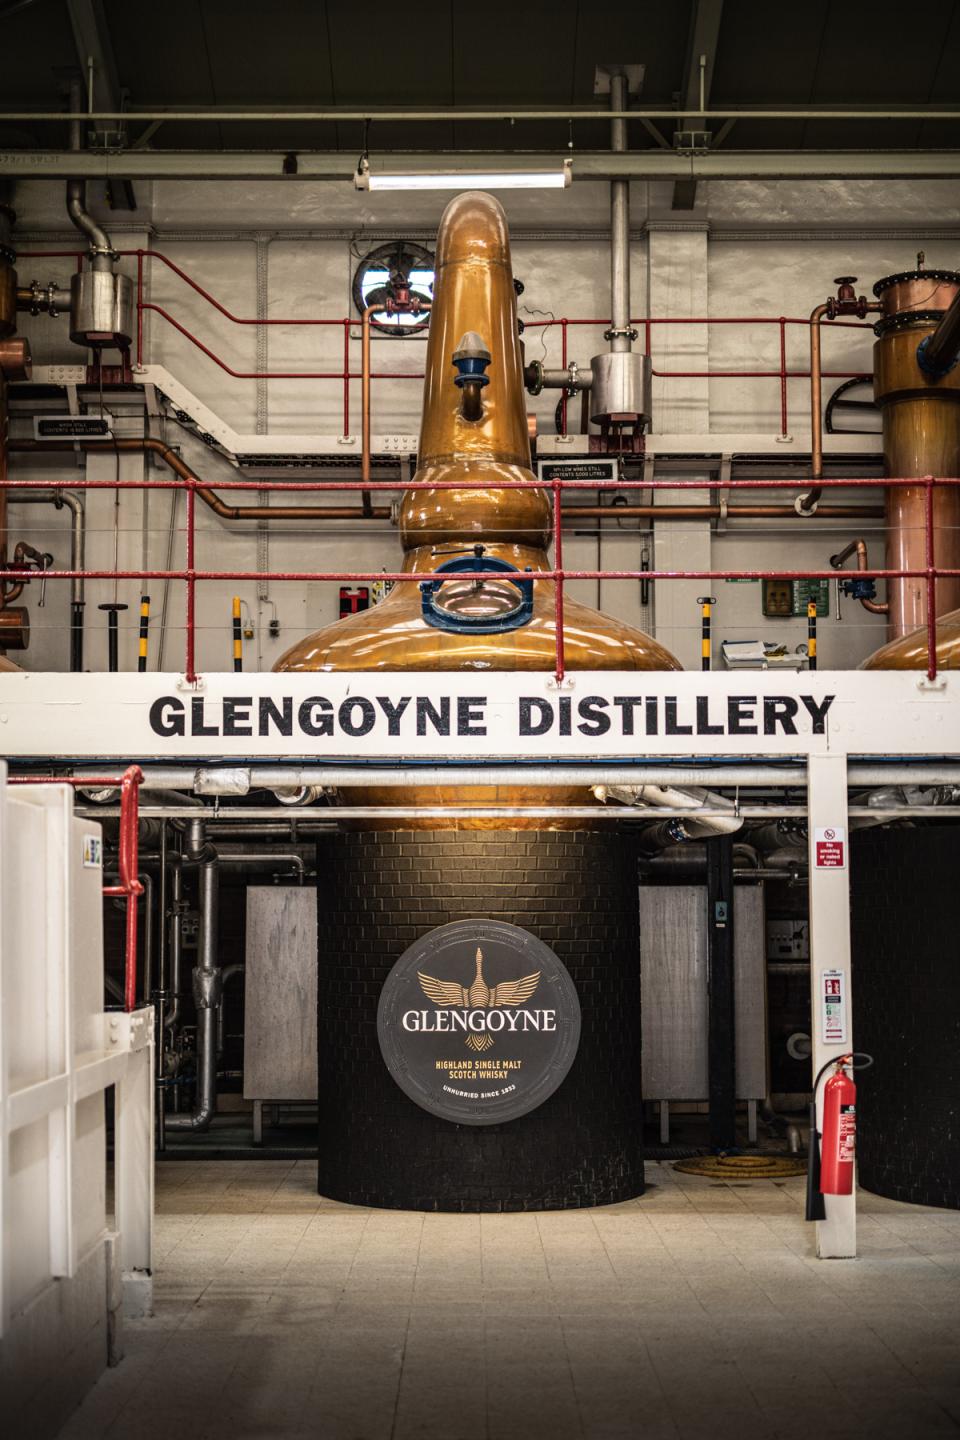 Glengoyne whisky distillery brand home still